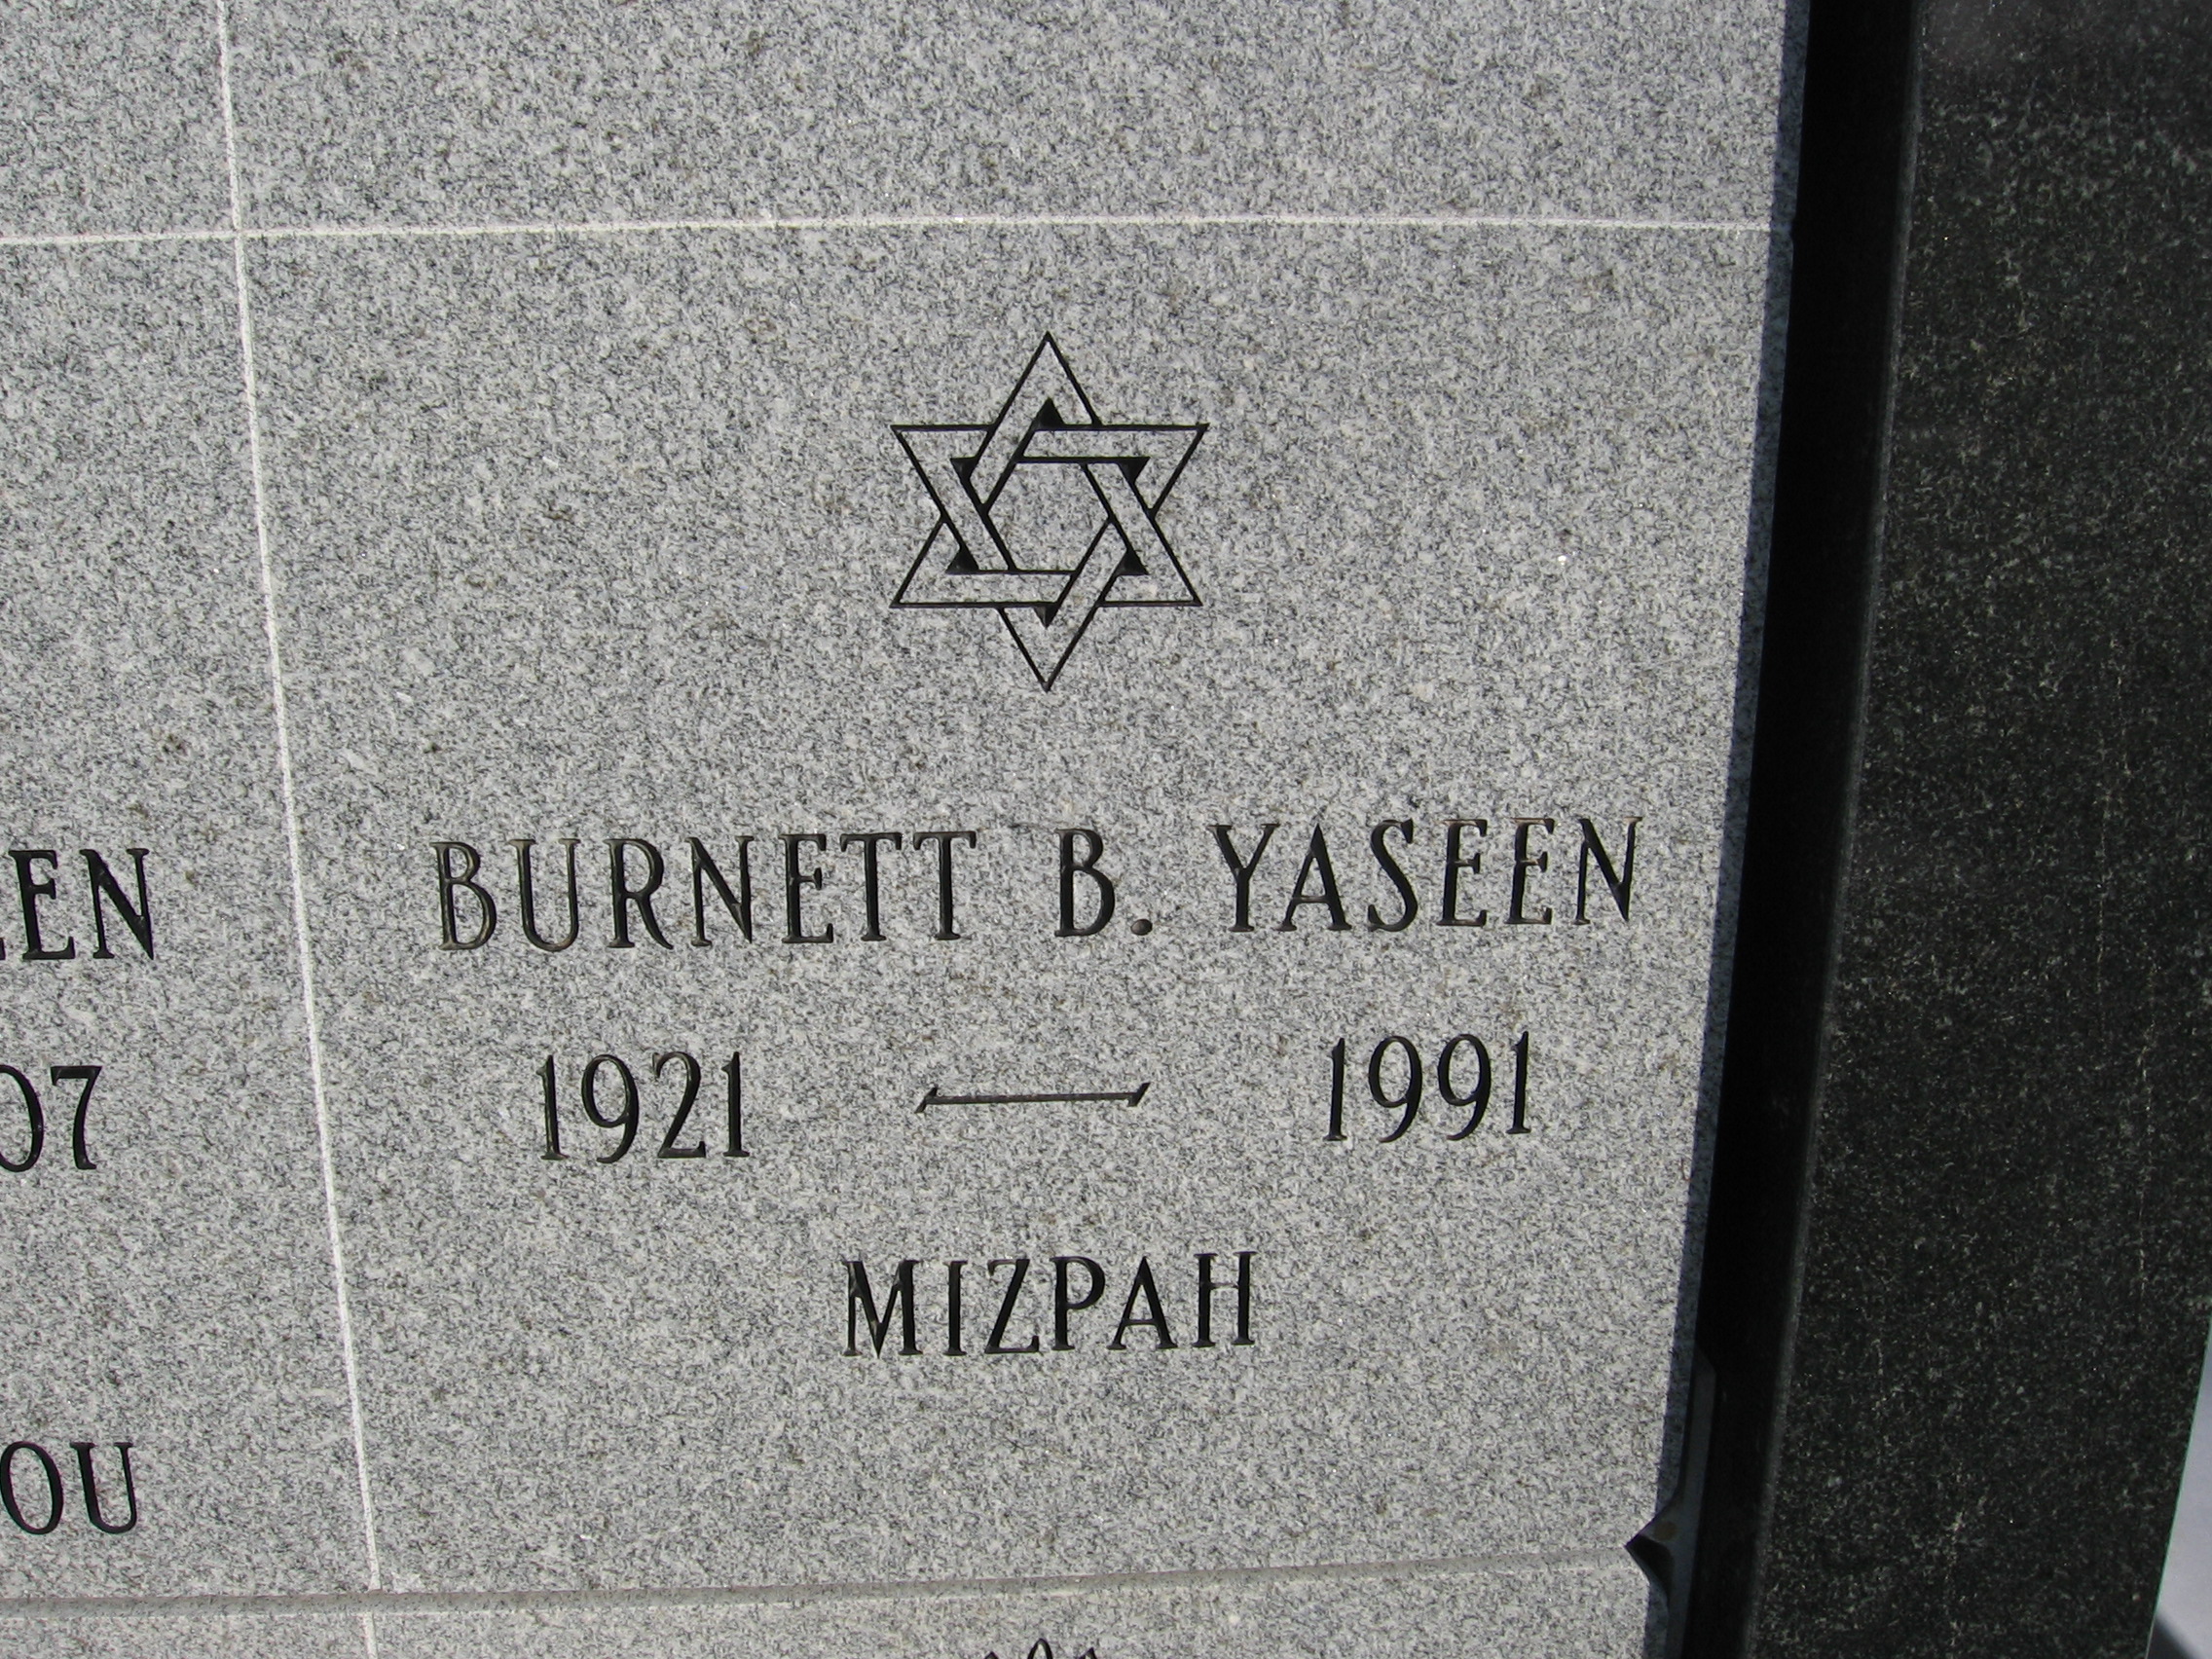 Burnett B Yaseen